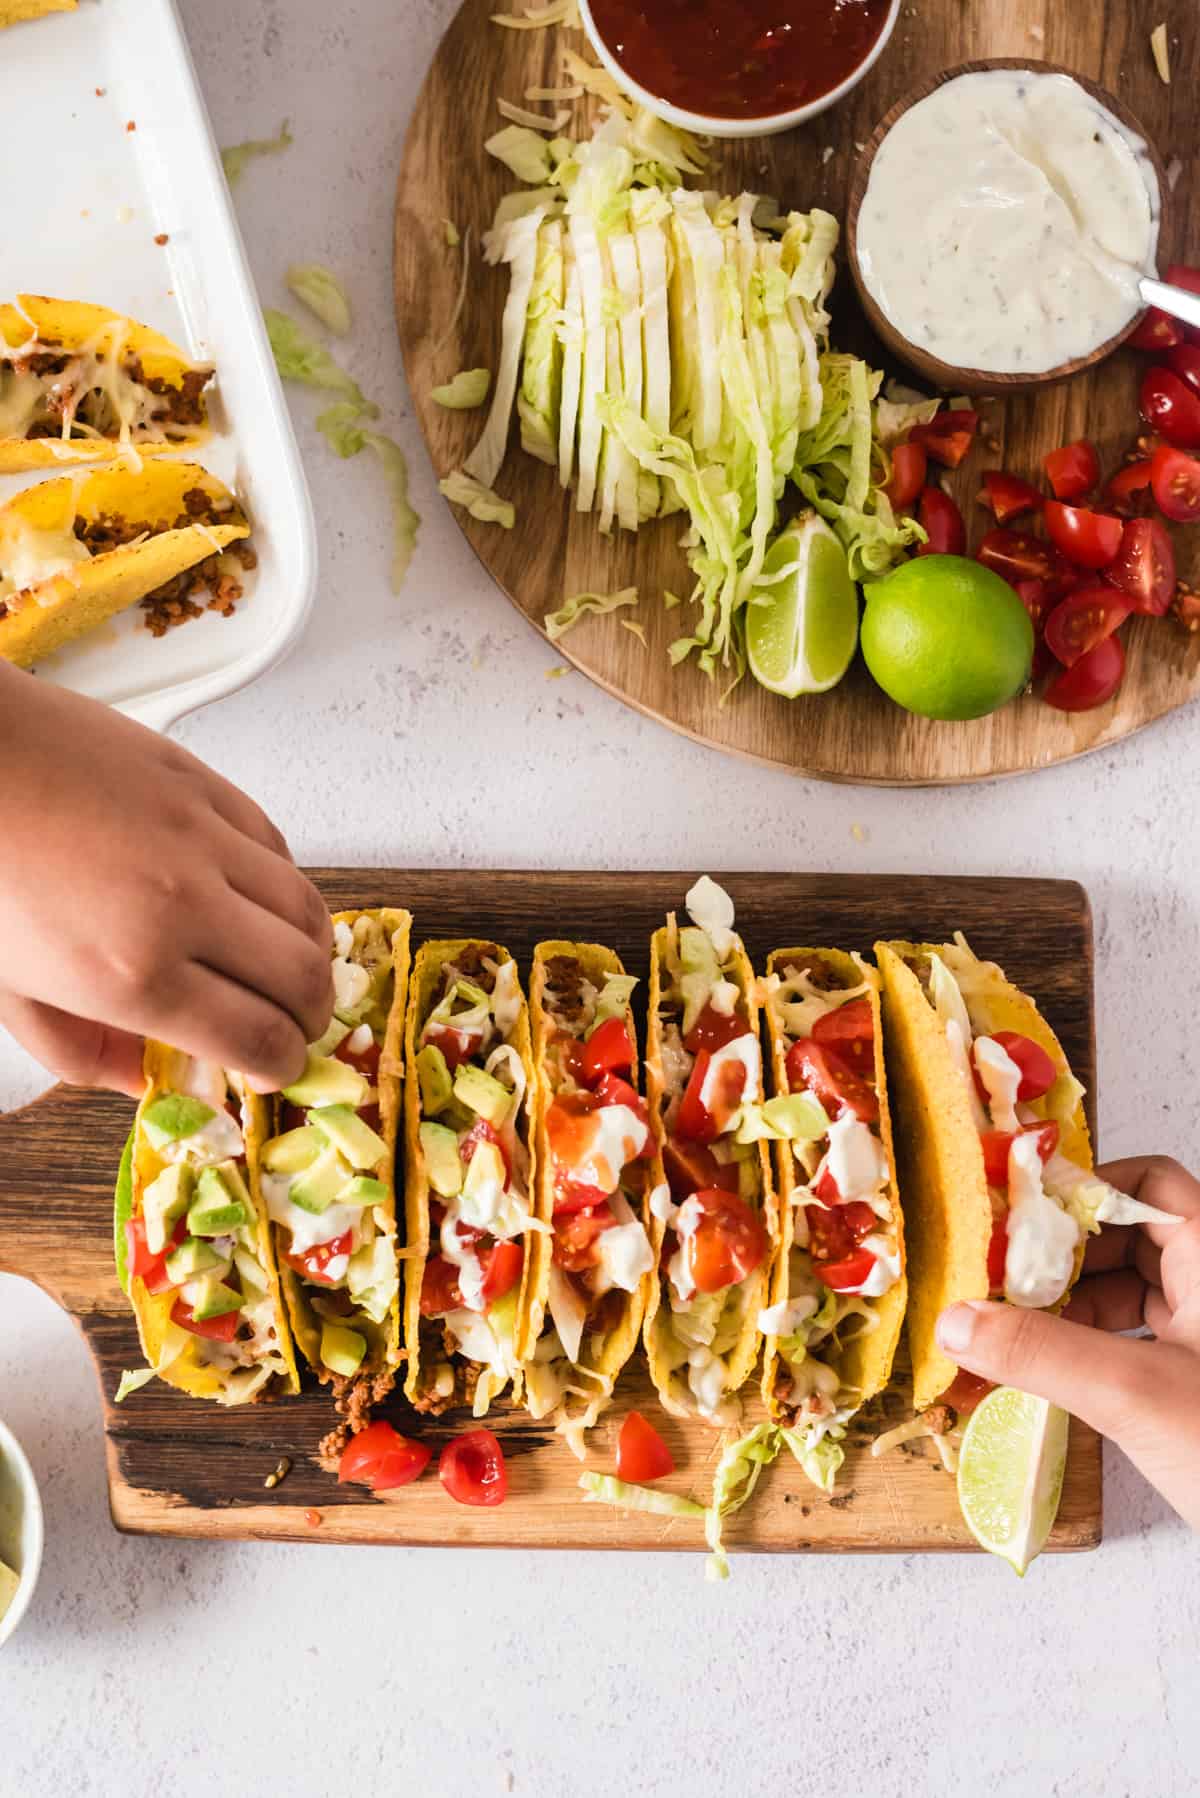 7 überbackene Tacos auf einem Holzbrett, zwei Hände nehmen sich je einen